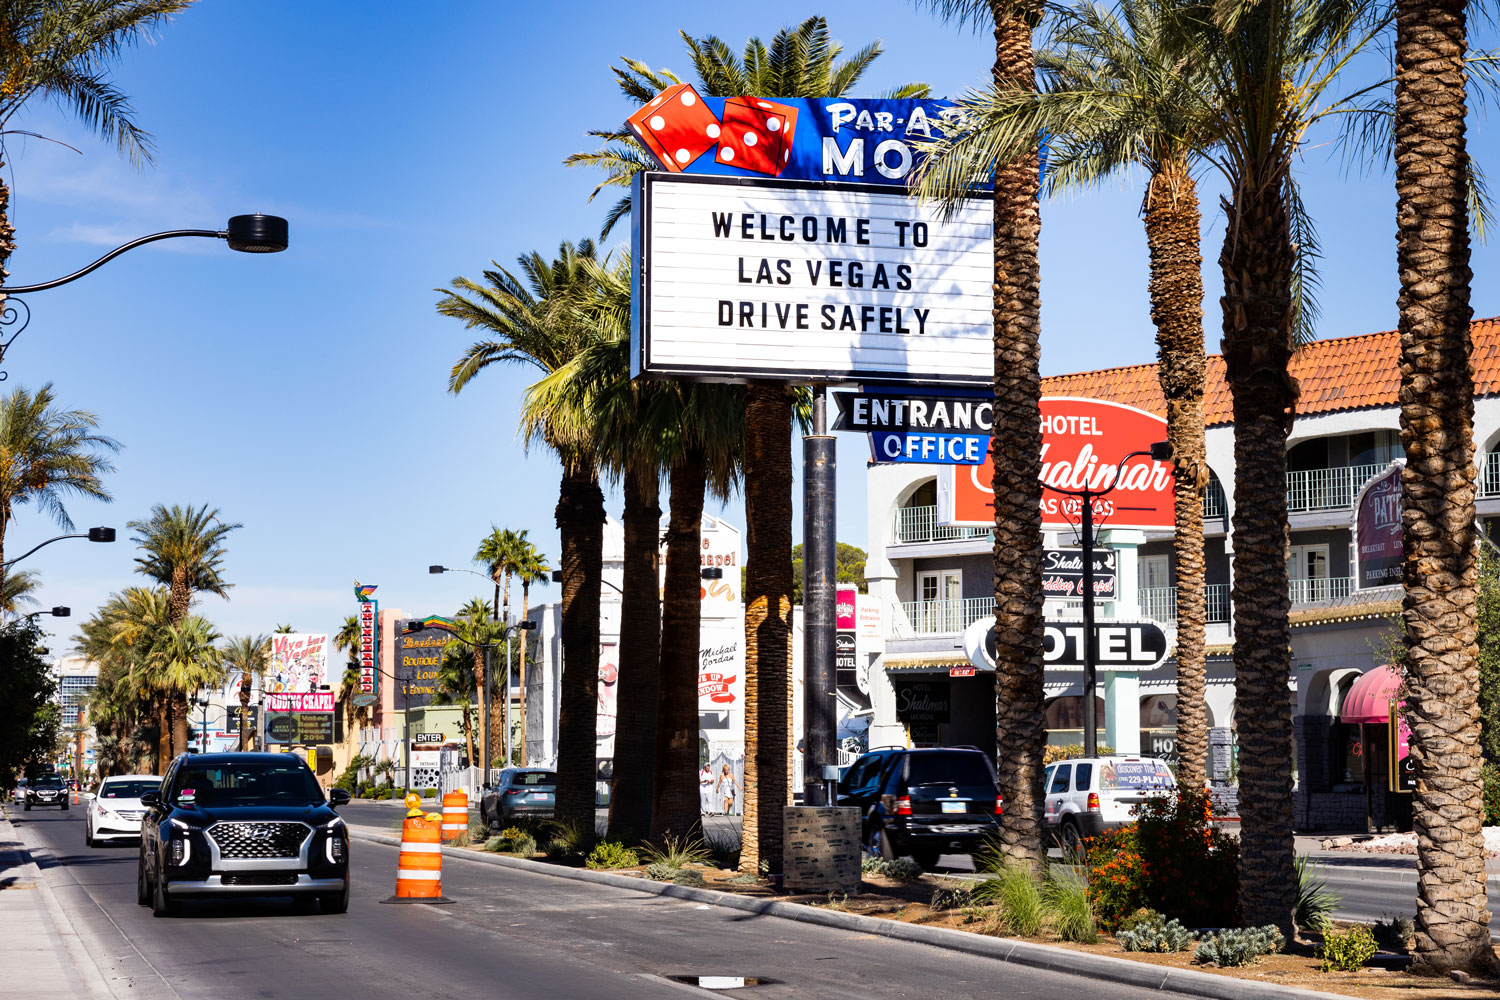 Historic Neon Sign Installed On Las Vegas Boulevard